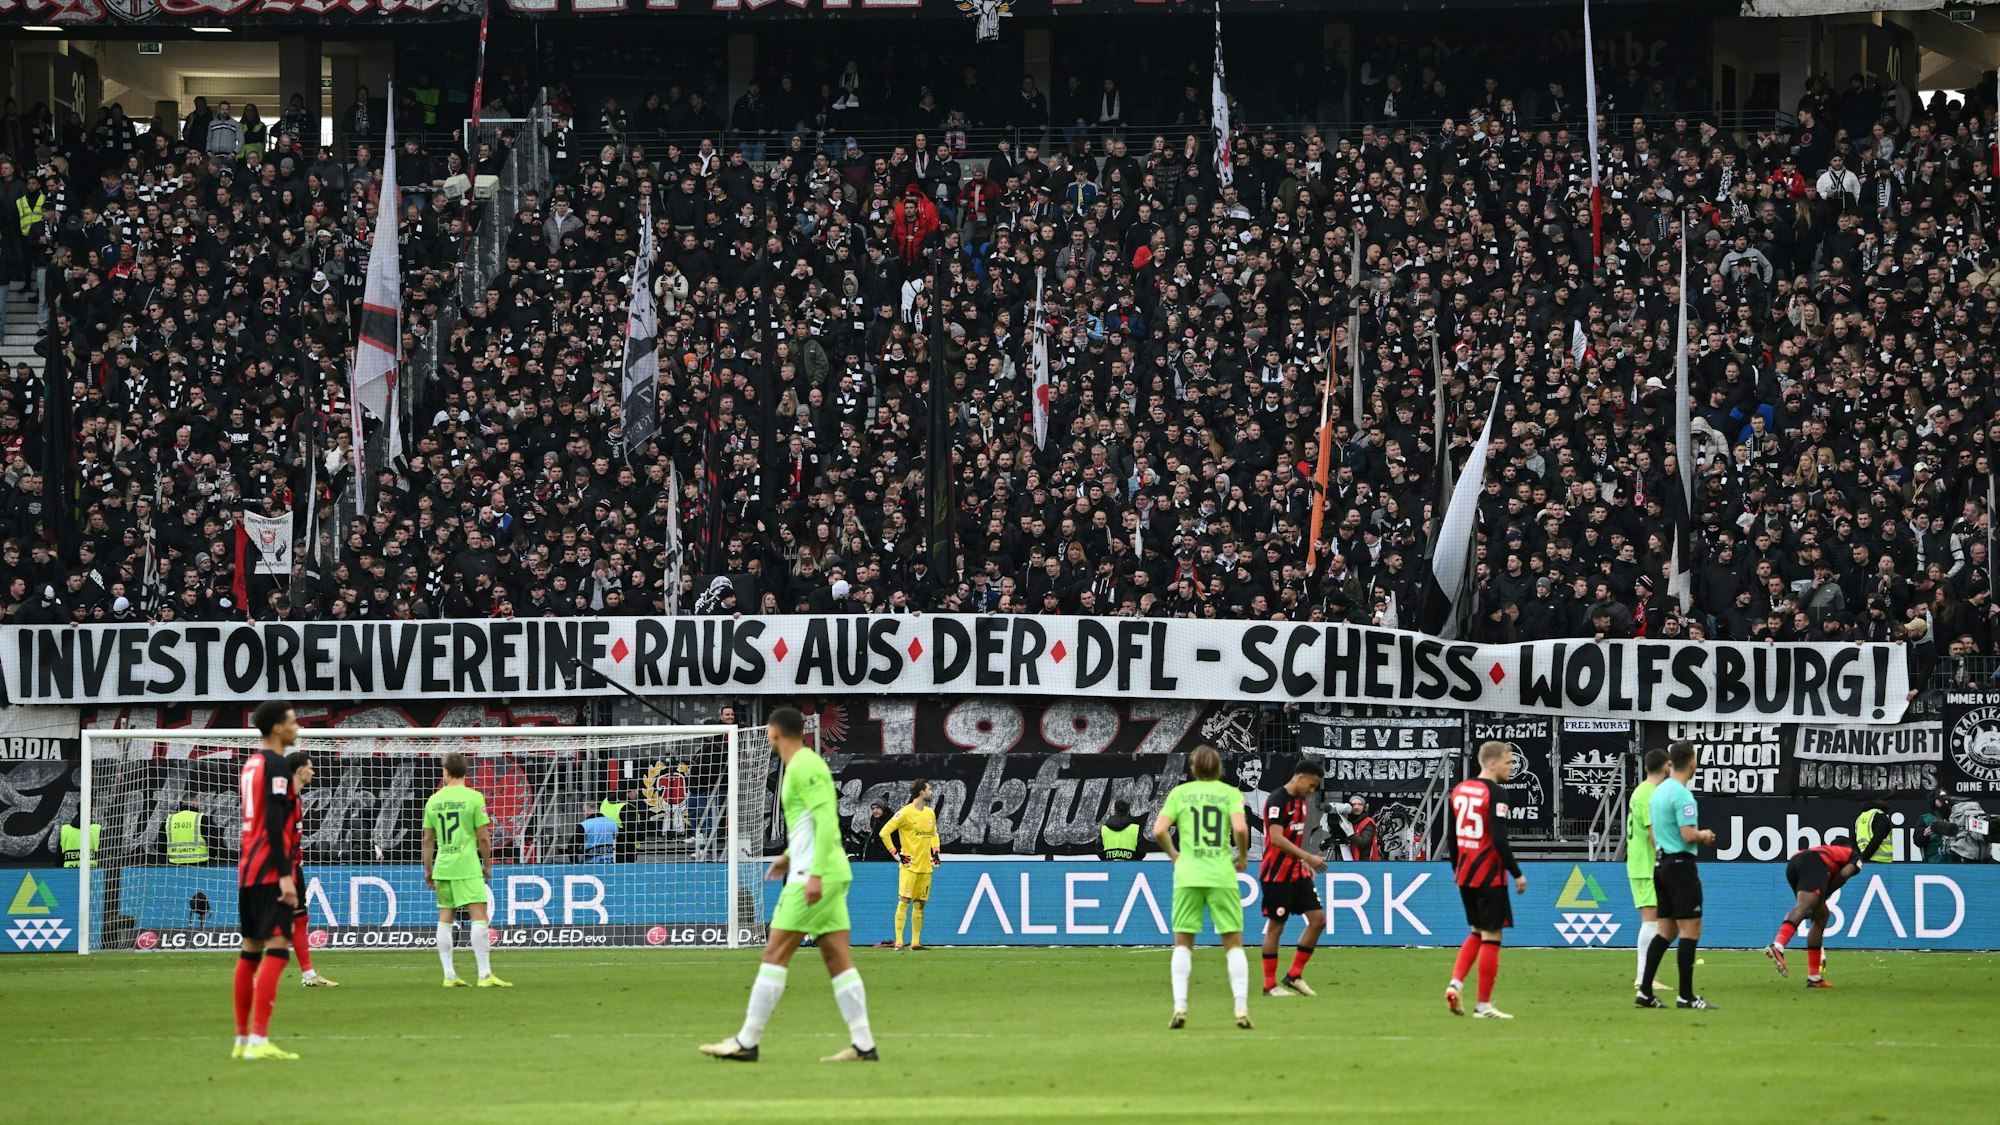 Die Frankfurter Ultras halten ein Plakat mit der Aufschrift „Investorenvereine raus aus der DFL - Scheiss Wolfsburg!“, während das Spiel unterbrochen ist.